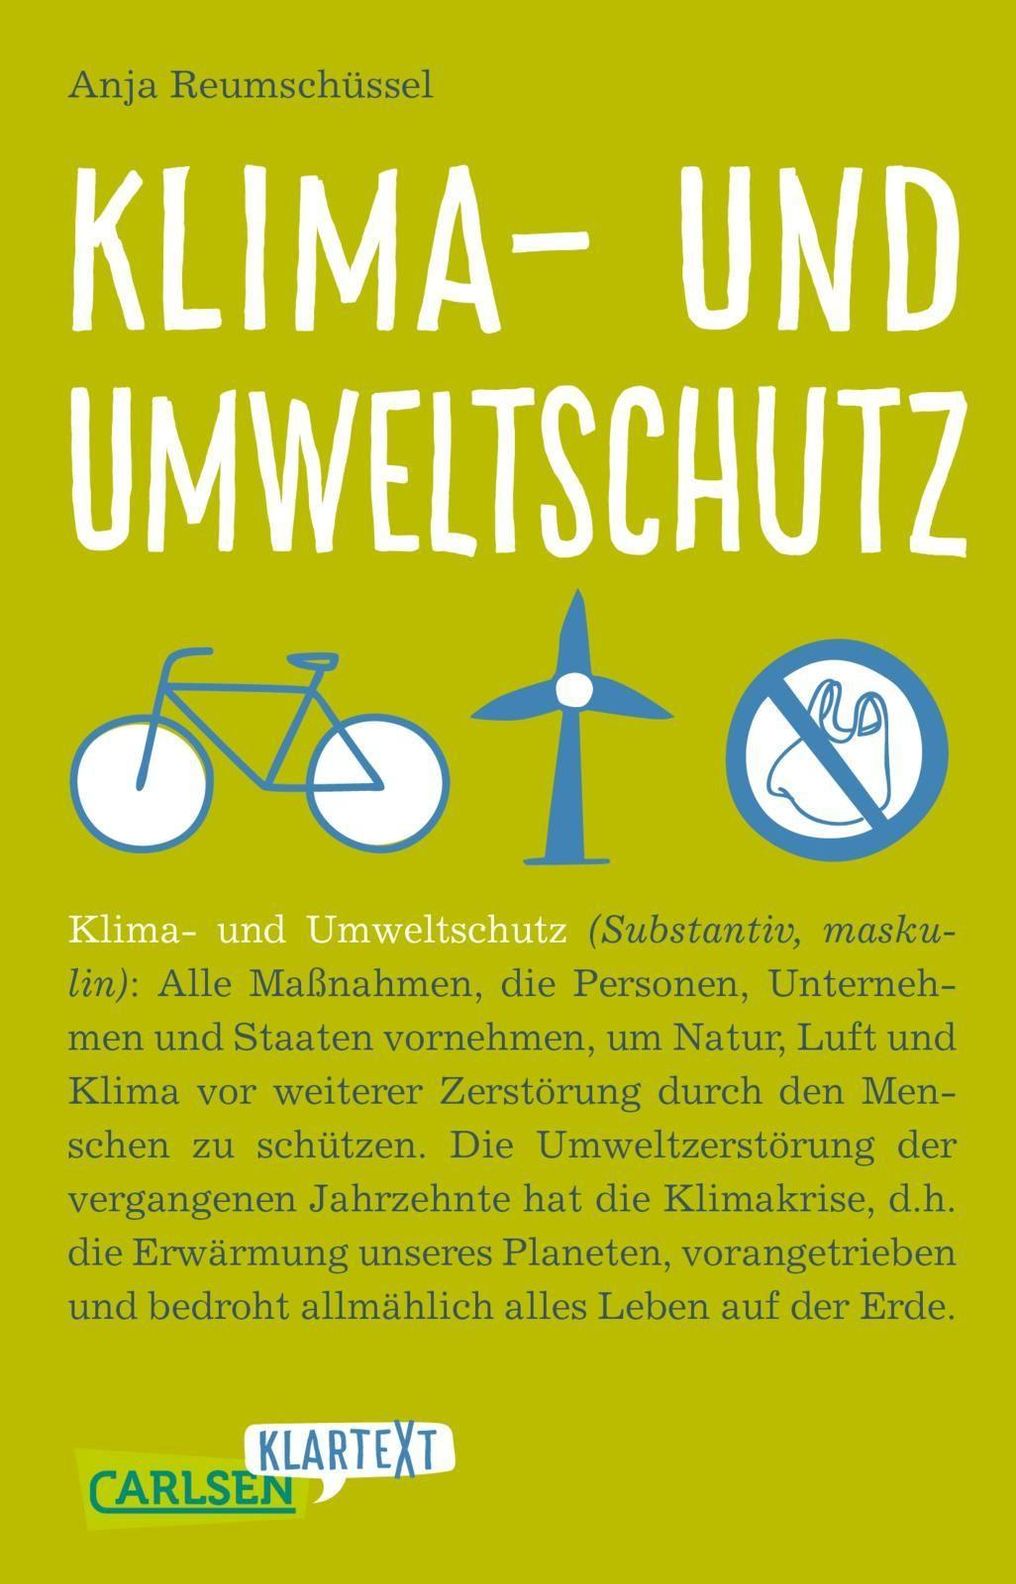 Carlsen Klartext: Klima- und Umweltschutz Buch - Weltbild.ch